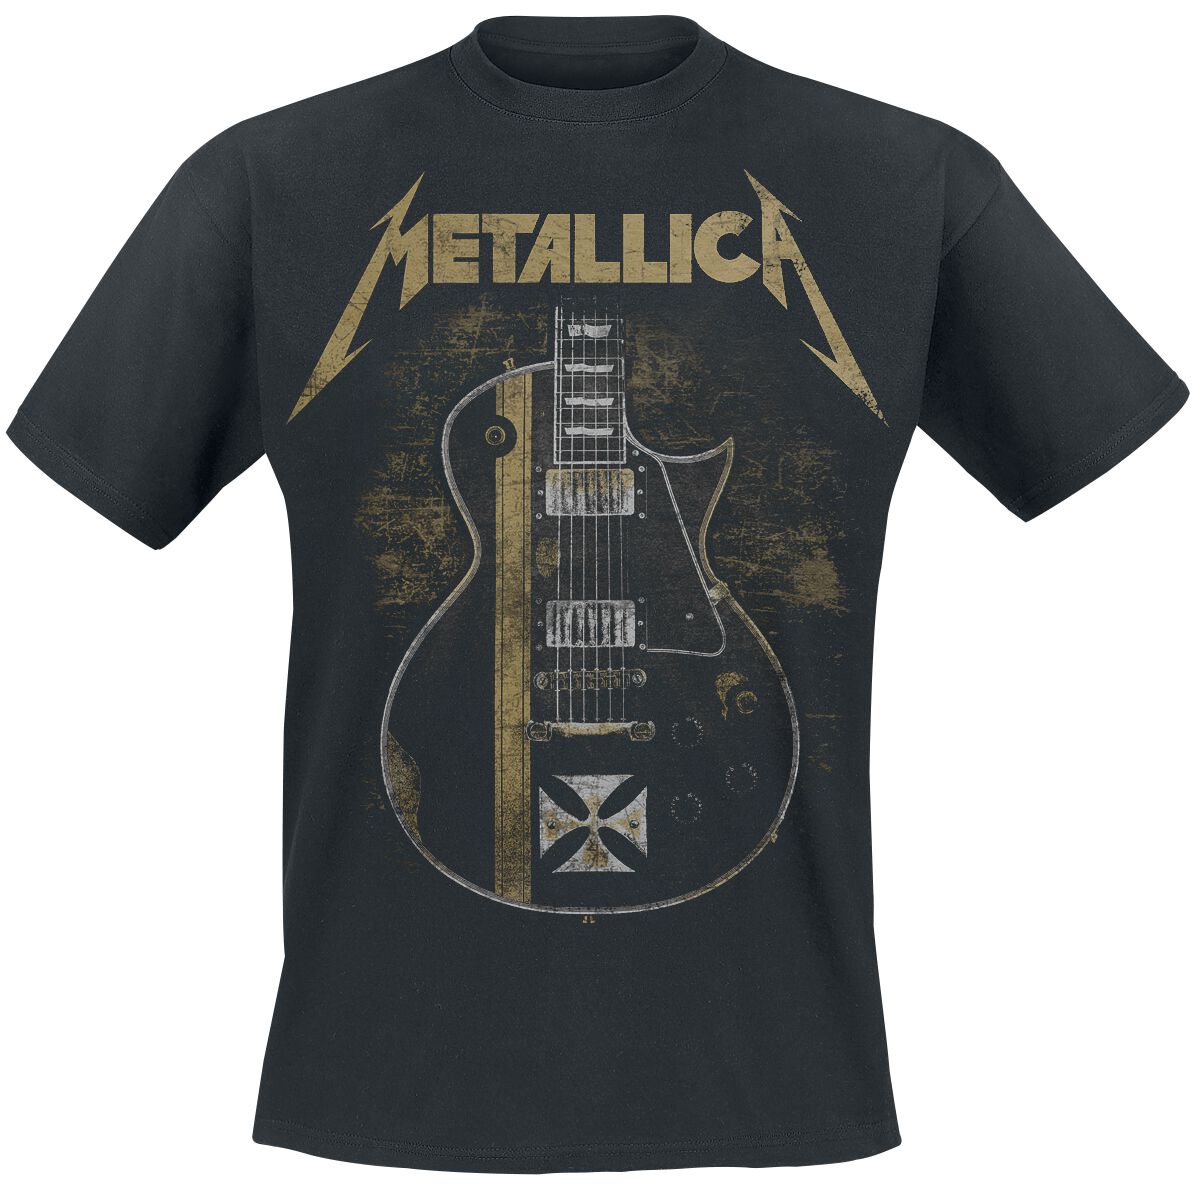 Metallica T-Shirt - Hetfield Iron Cross Guitar - S bis 5XL - für Männer - Größe S - schwarz  - Lizenziertes Merchandise!